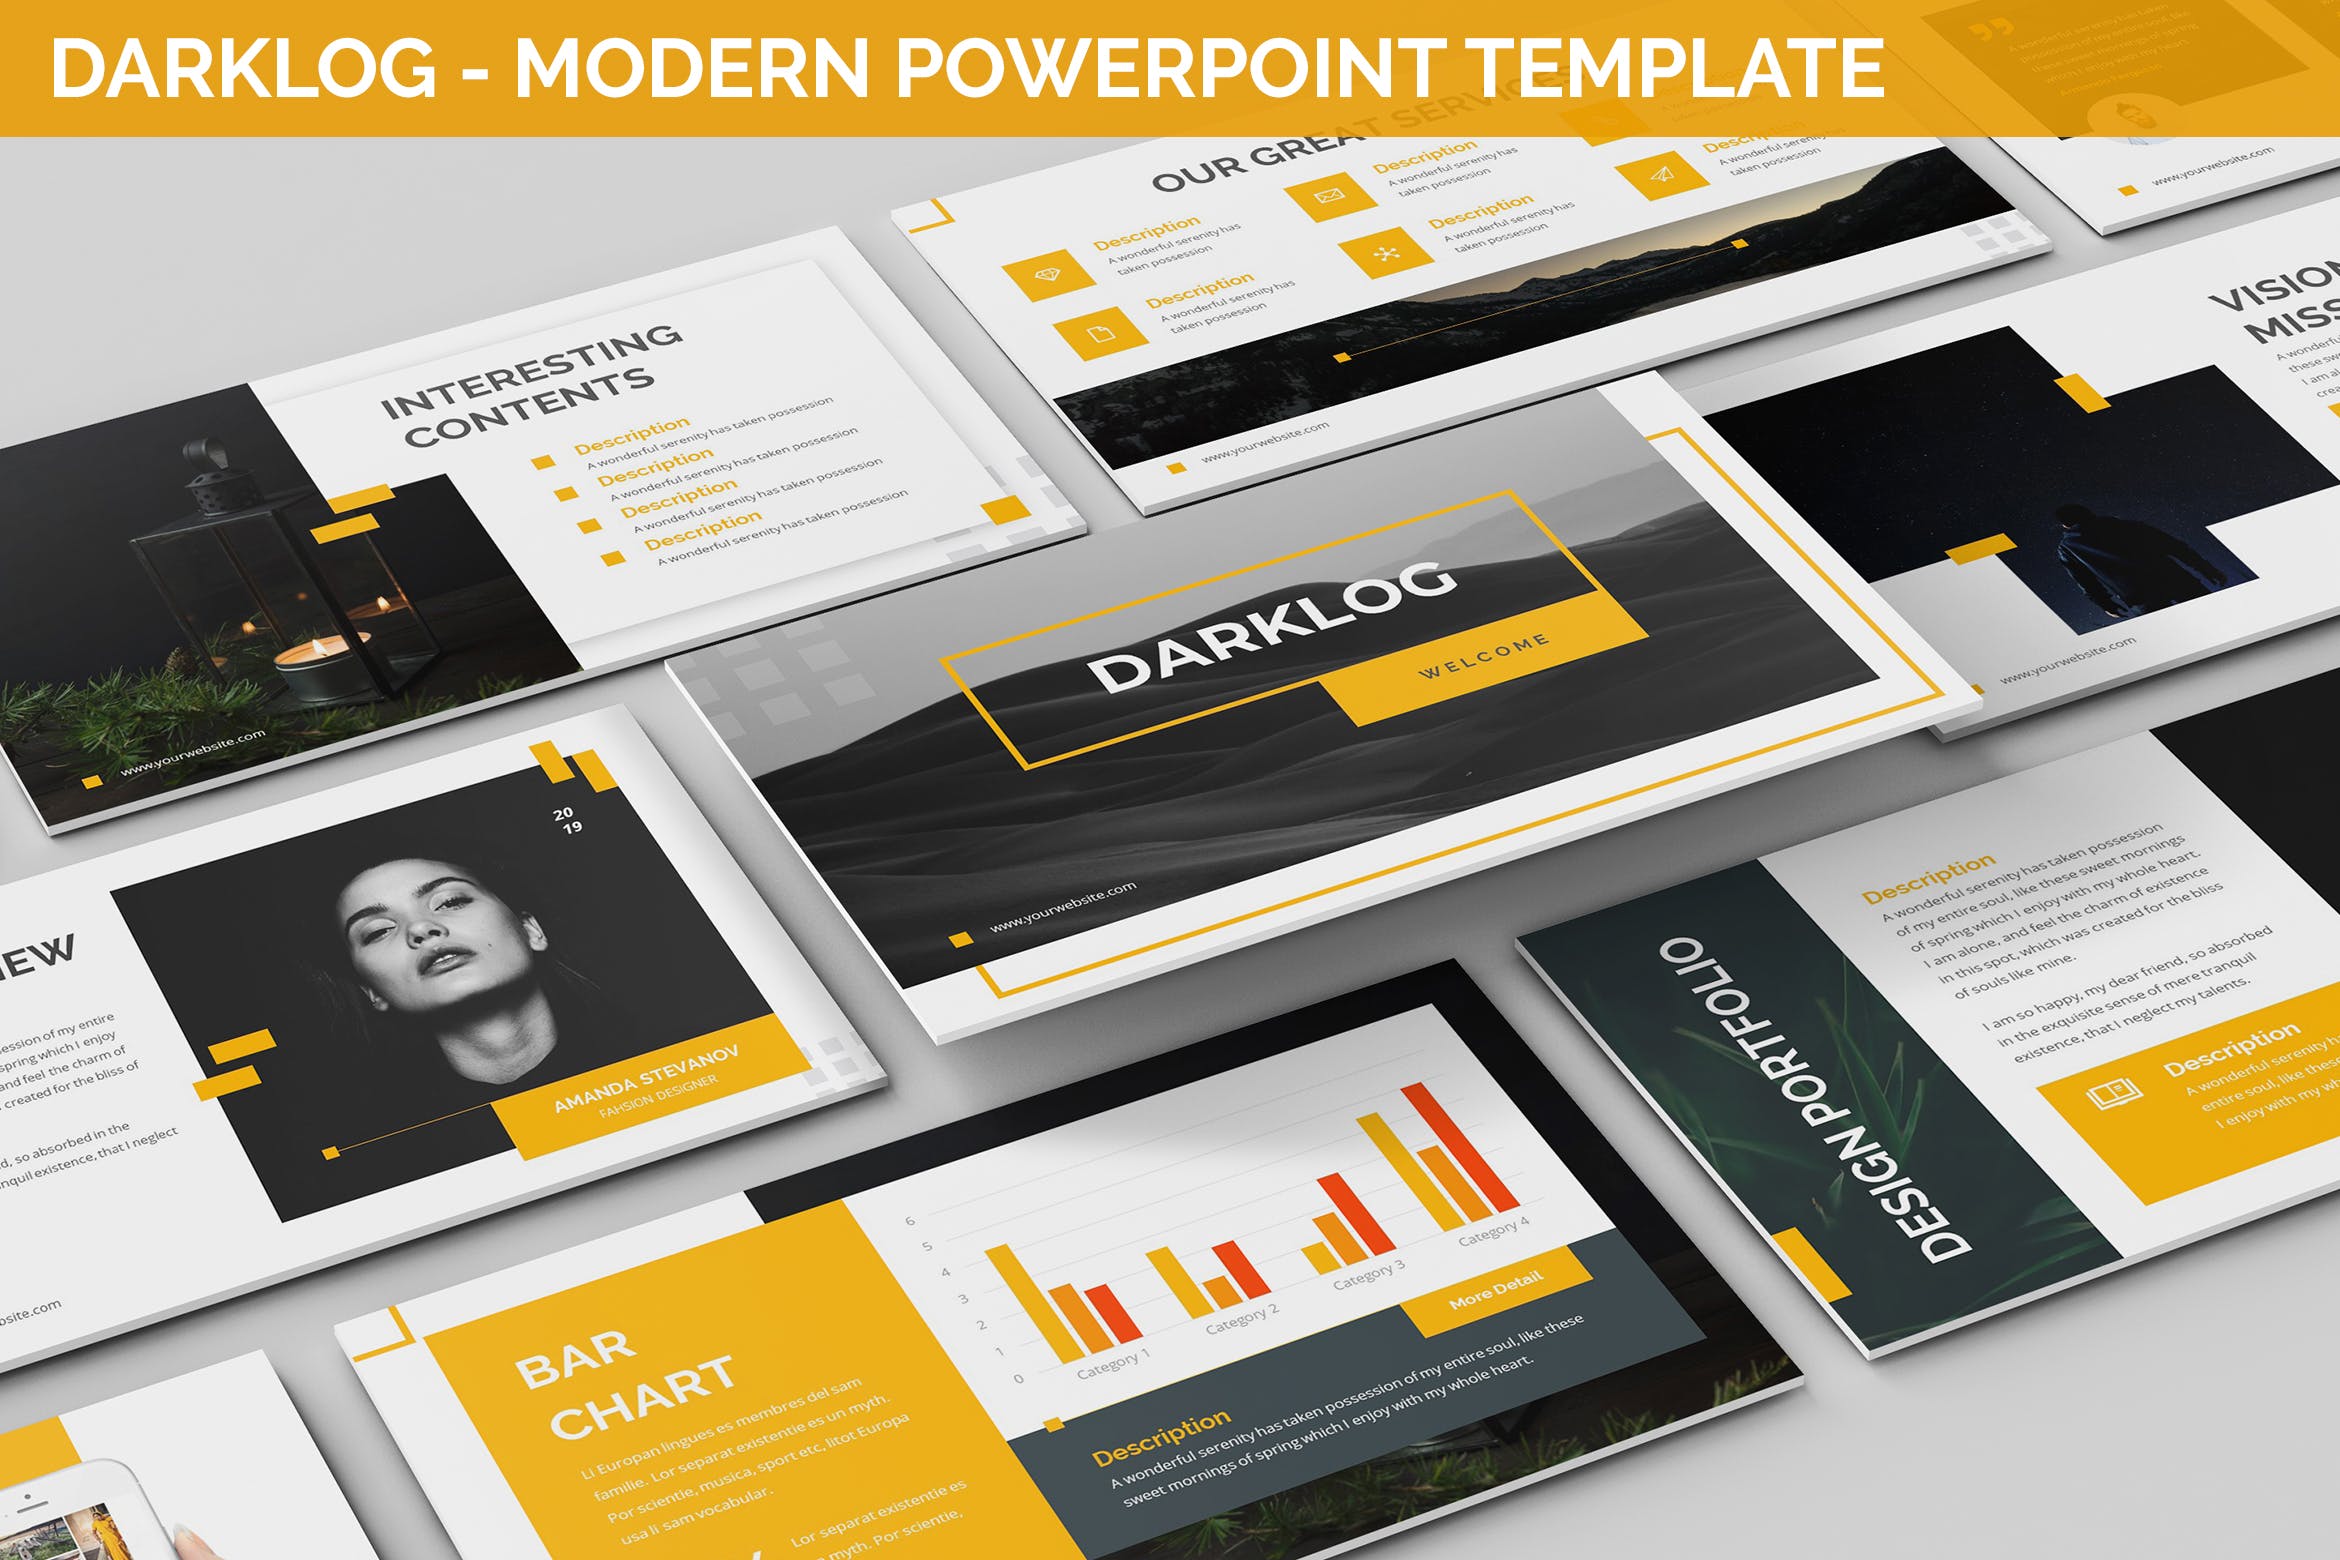 现代设计风格企业宣传PPT幻灯片模板素材 Darklog – Modern Powerpoint Template插图